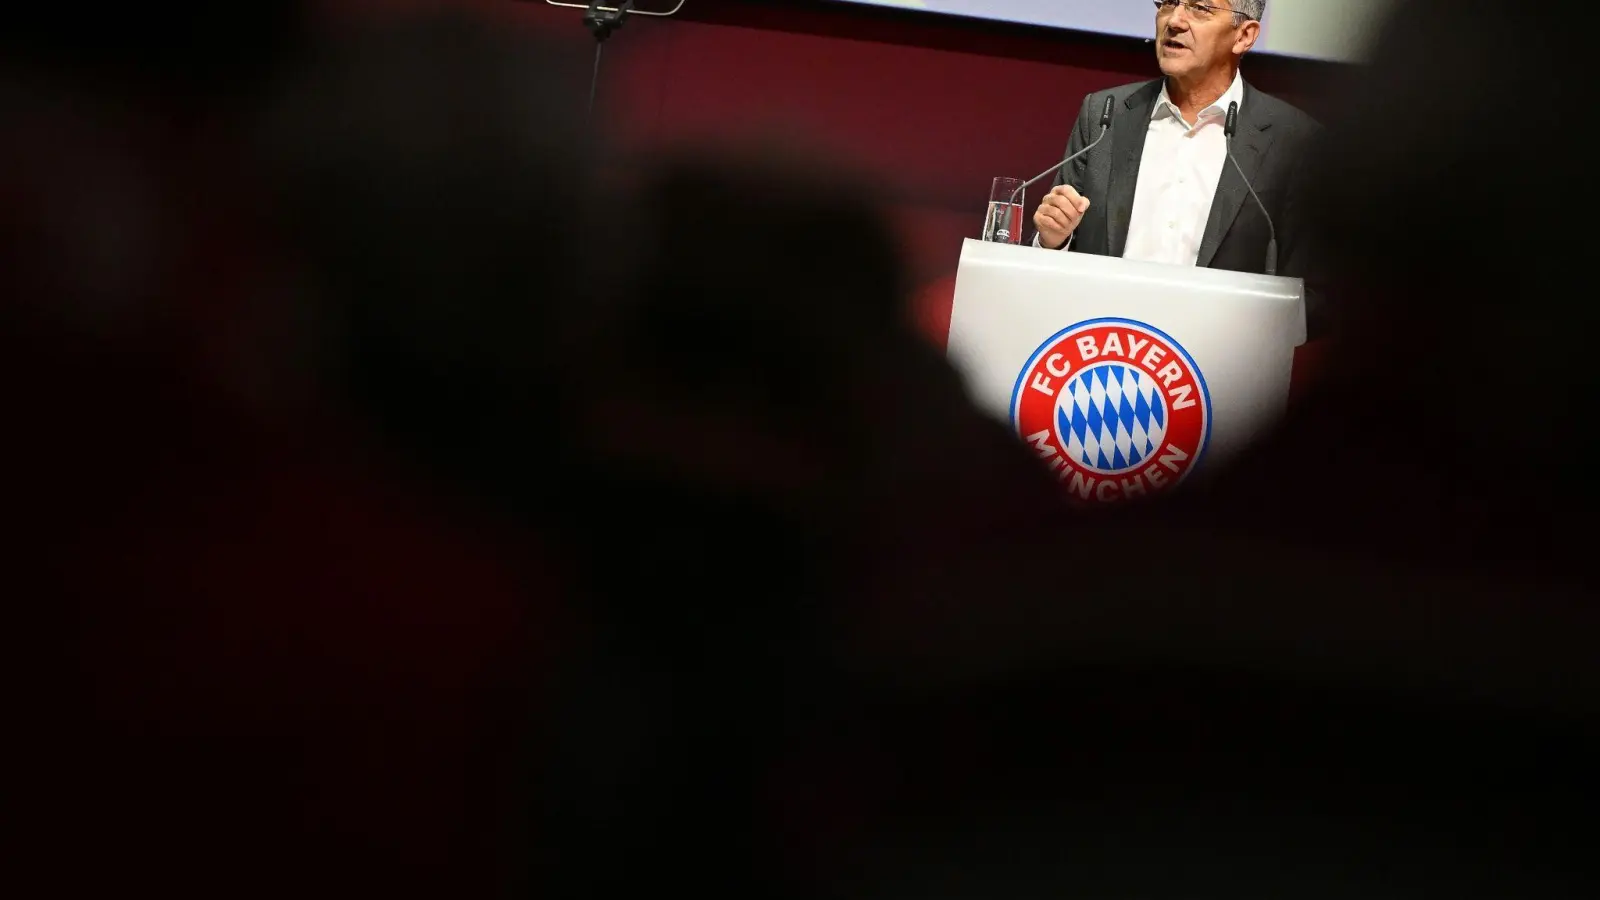 Herbert Hainer, der Präsident des FC Bayern, spricht auf der Bühne. (Foto: Angelika Warmuth/dpa)